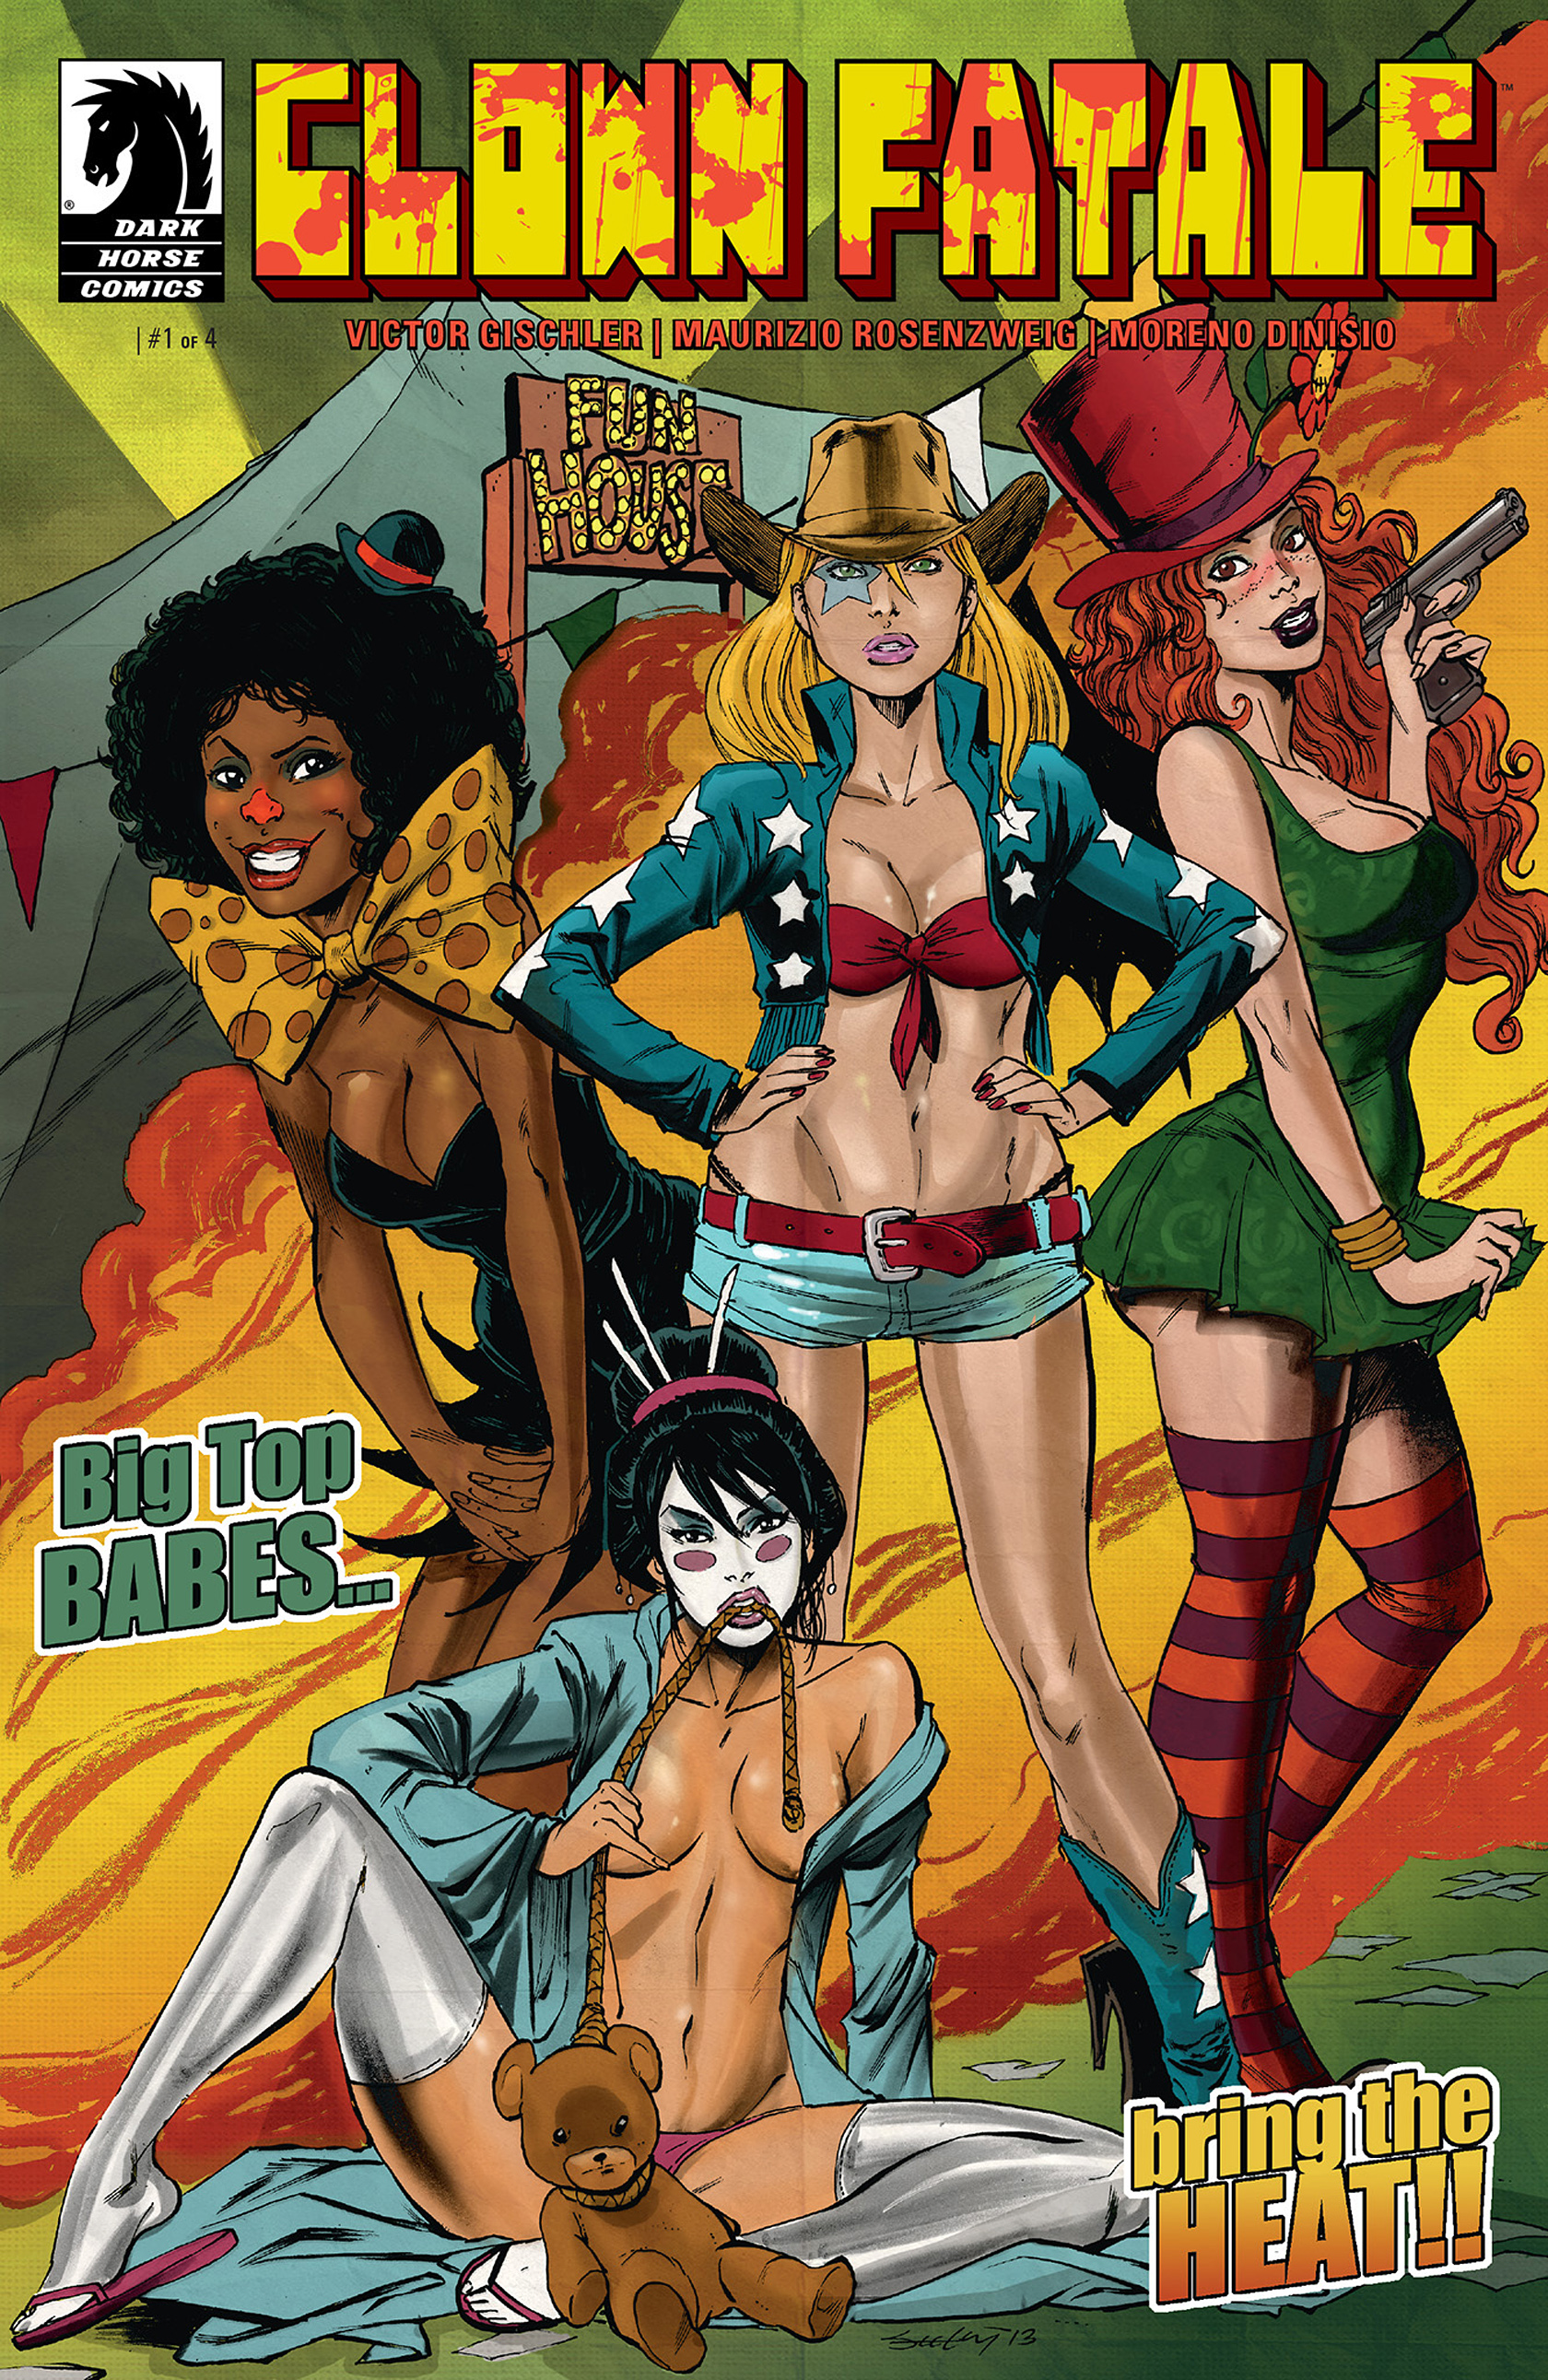 Read online Clown Fatale comic -  Issue #1 - 1